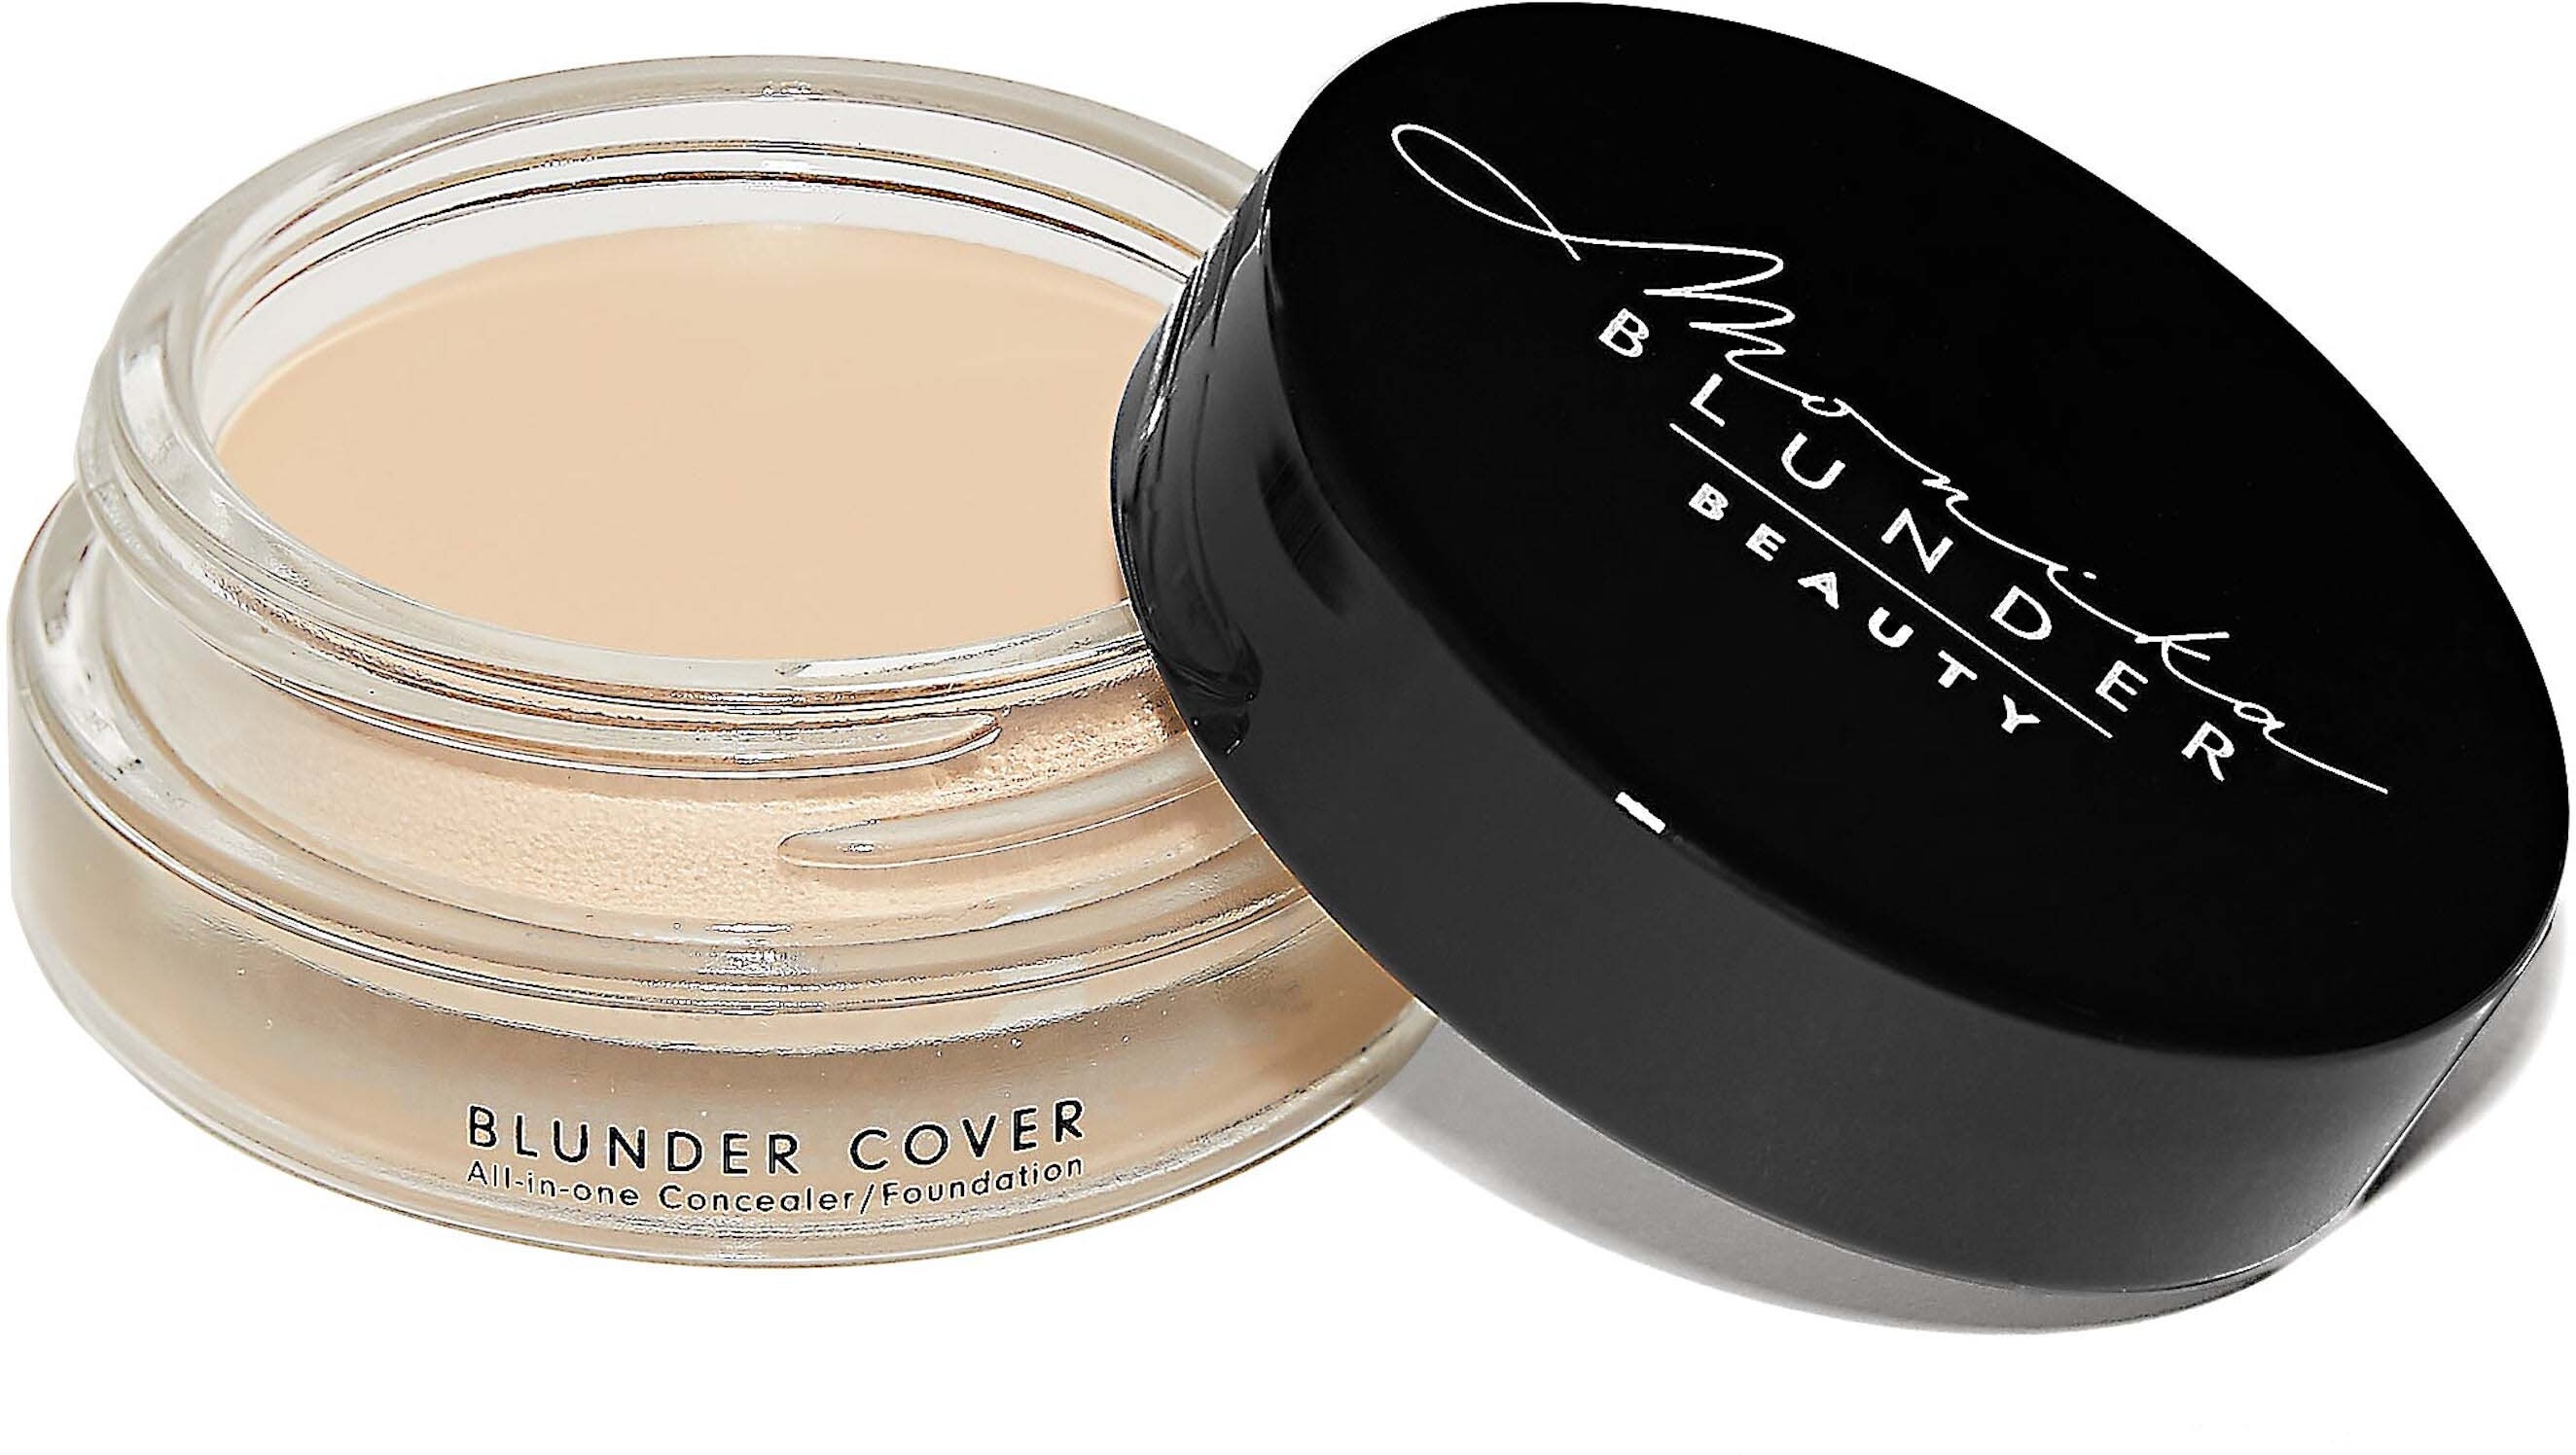 Monika Blunder Beauty Blunder Cover Foundation/Concealer 1 - Ein